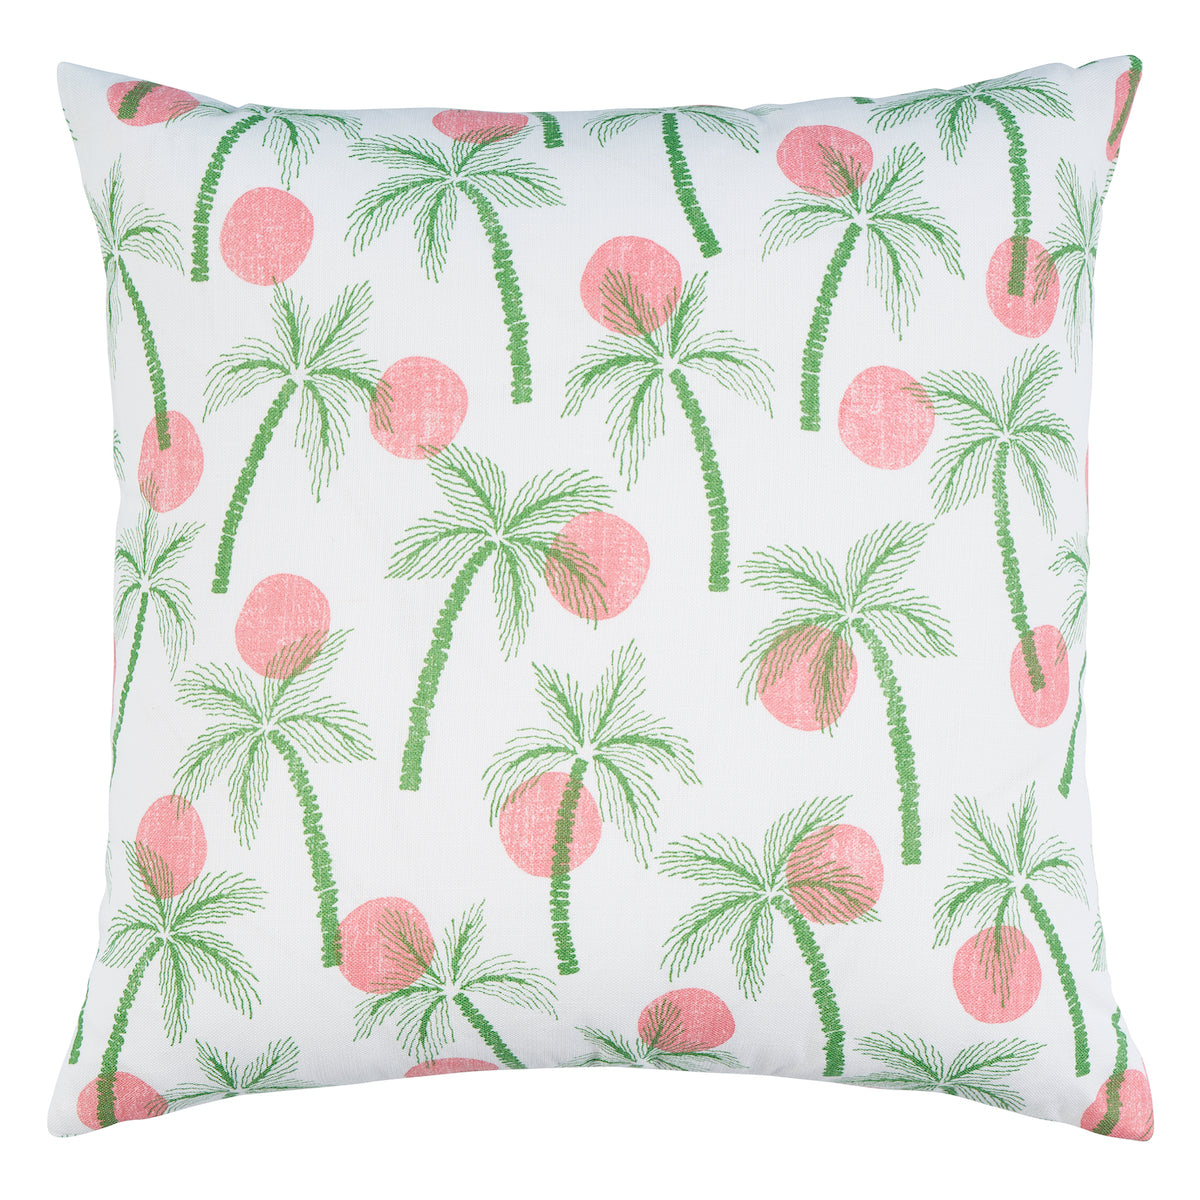 Clarabella Palm I/O Pillow | Tropical